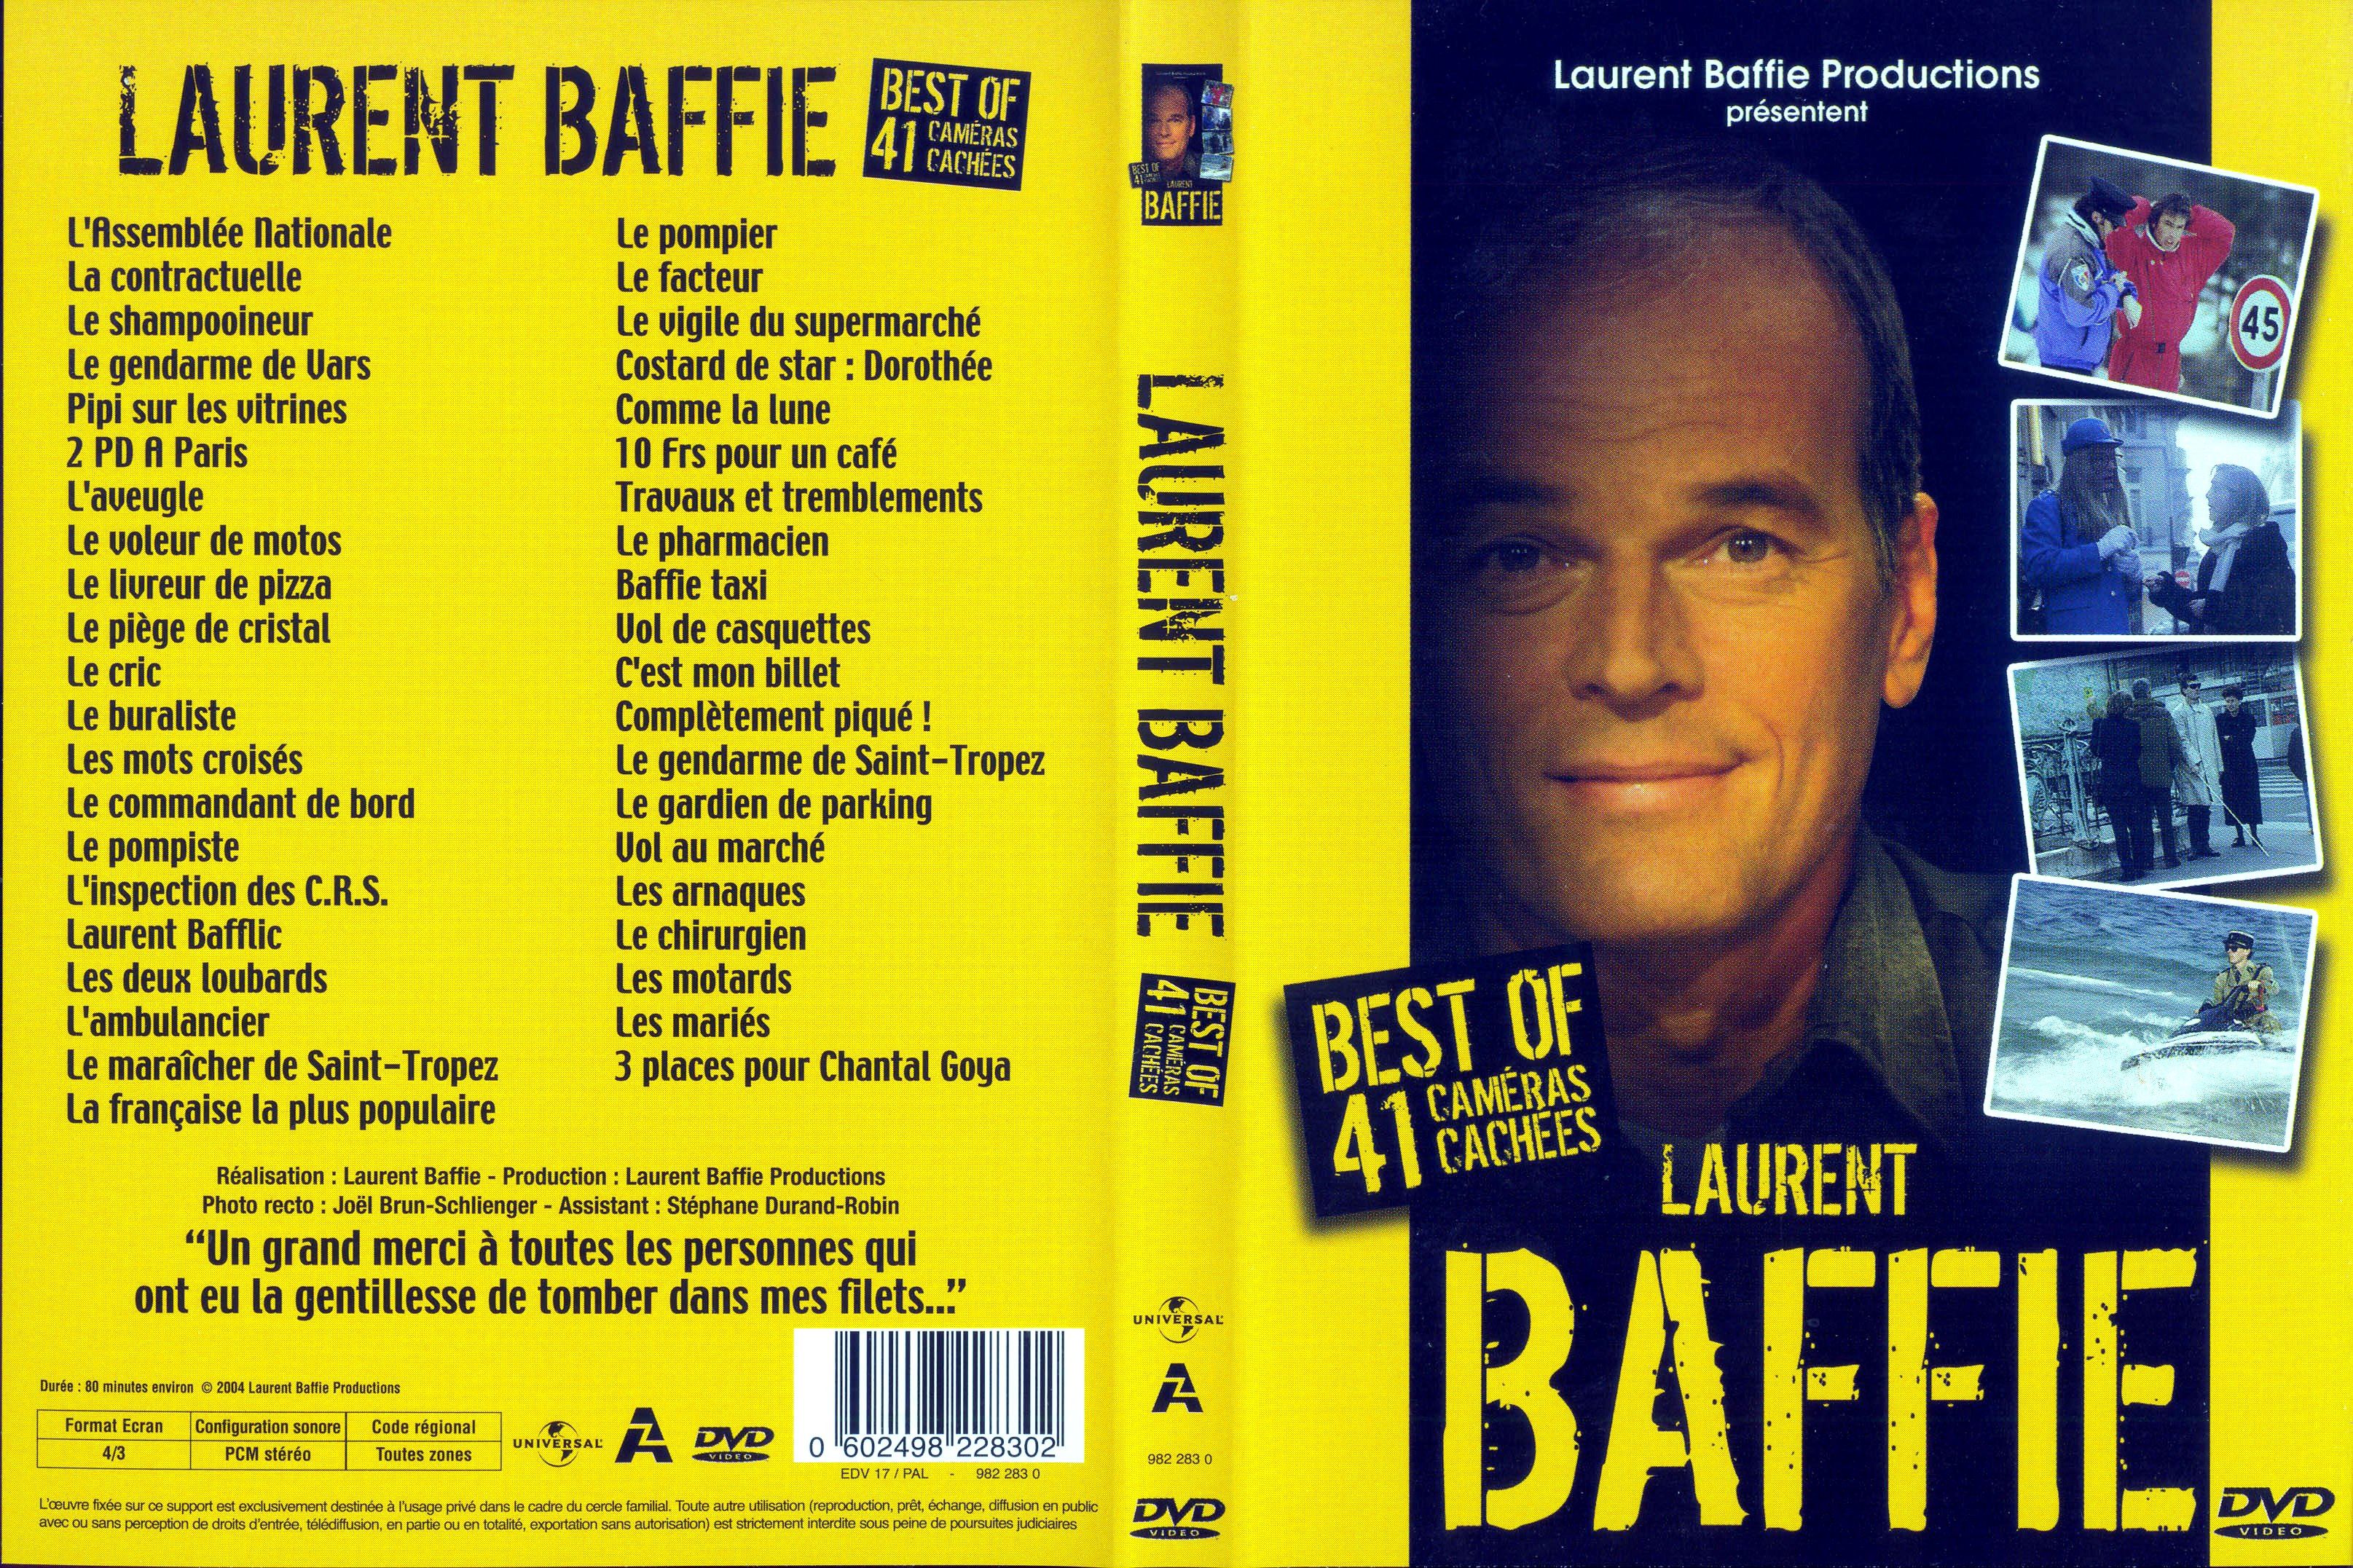 Jaquette DVD de Laurent Baffie Best of 41 cameras cachées ...